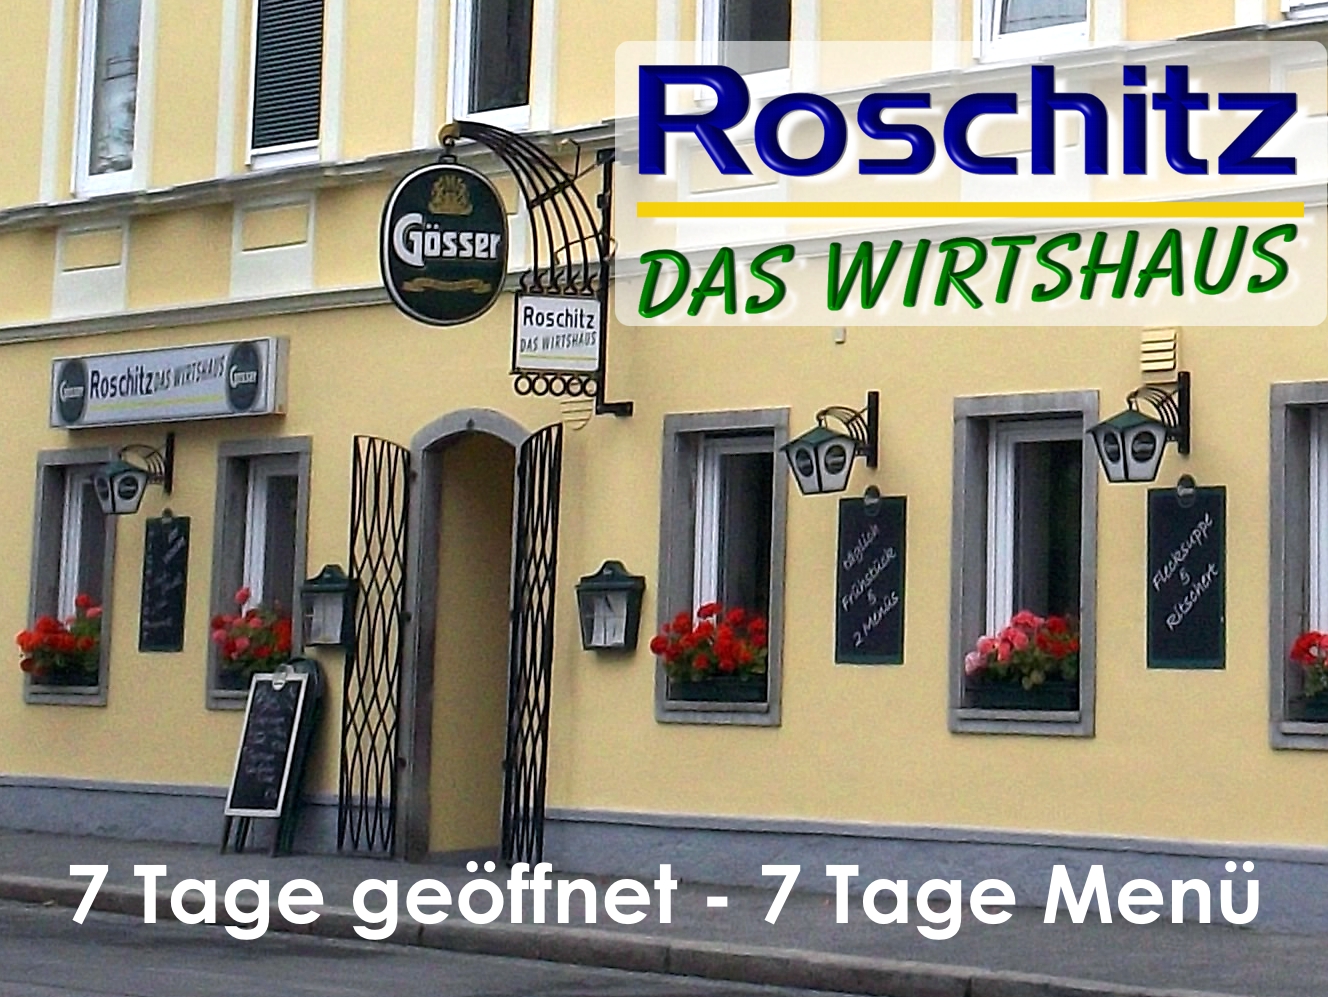 Roschitz - Das Wirtshaus, Georgigasse 42 in Graz